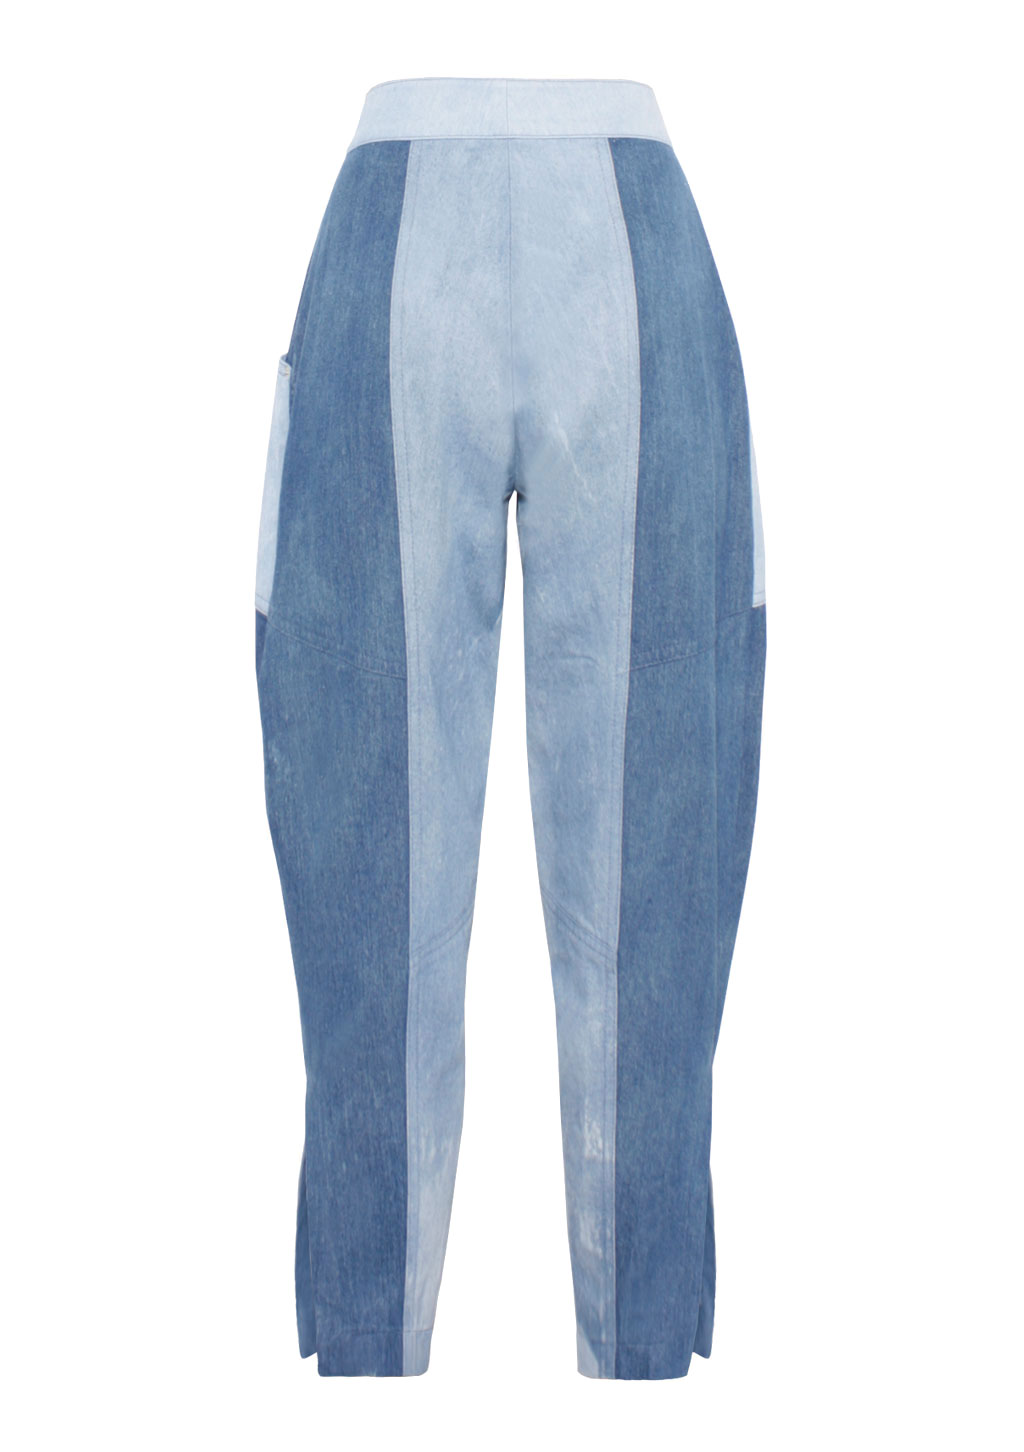 Jeans Baggy Damen Patchwork, von Designer Stefan Eckert aus Hamburg-2